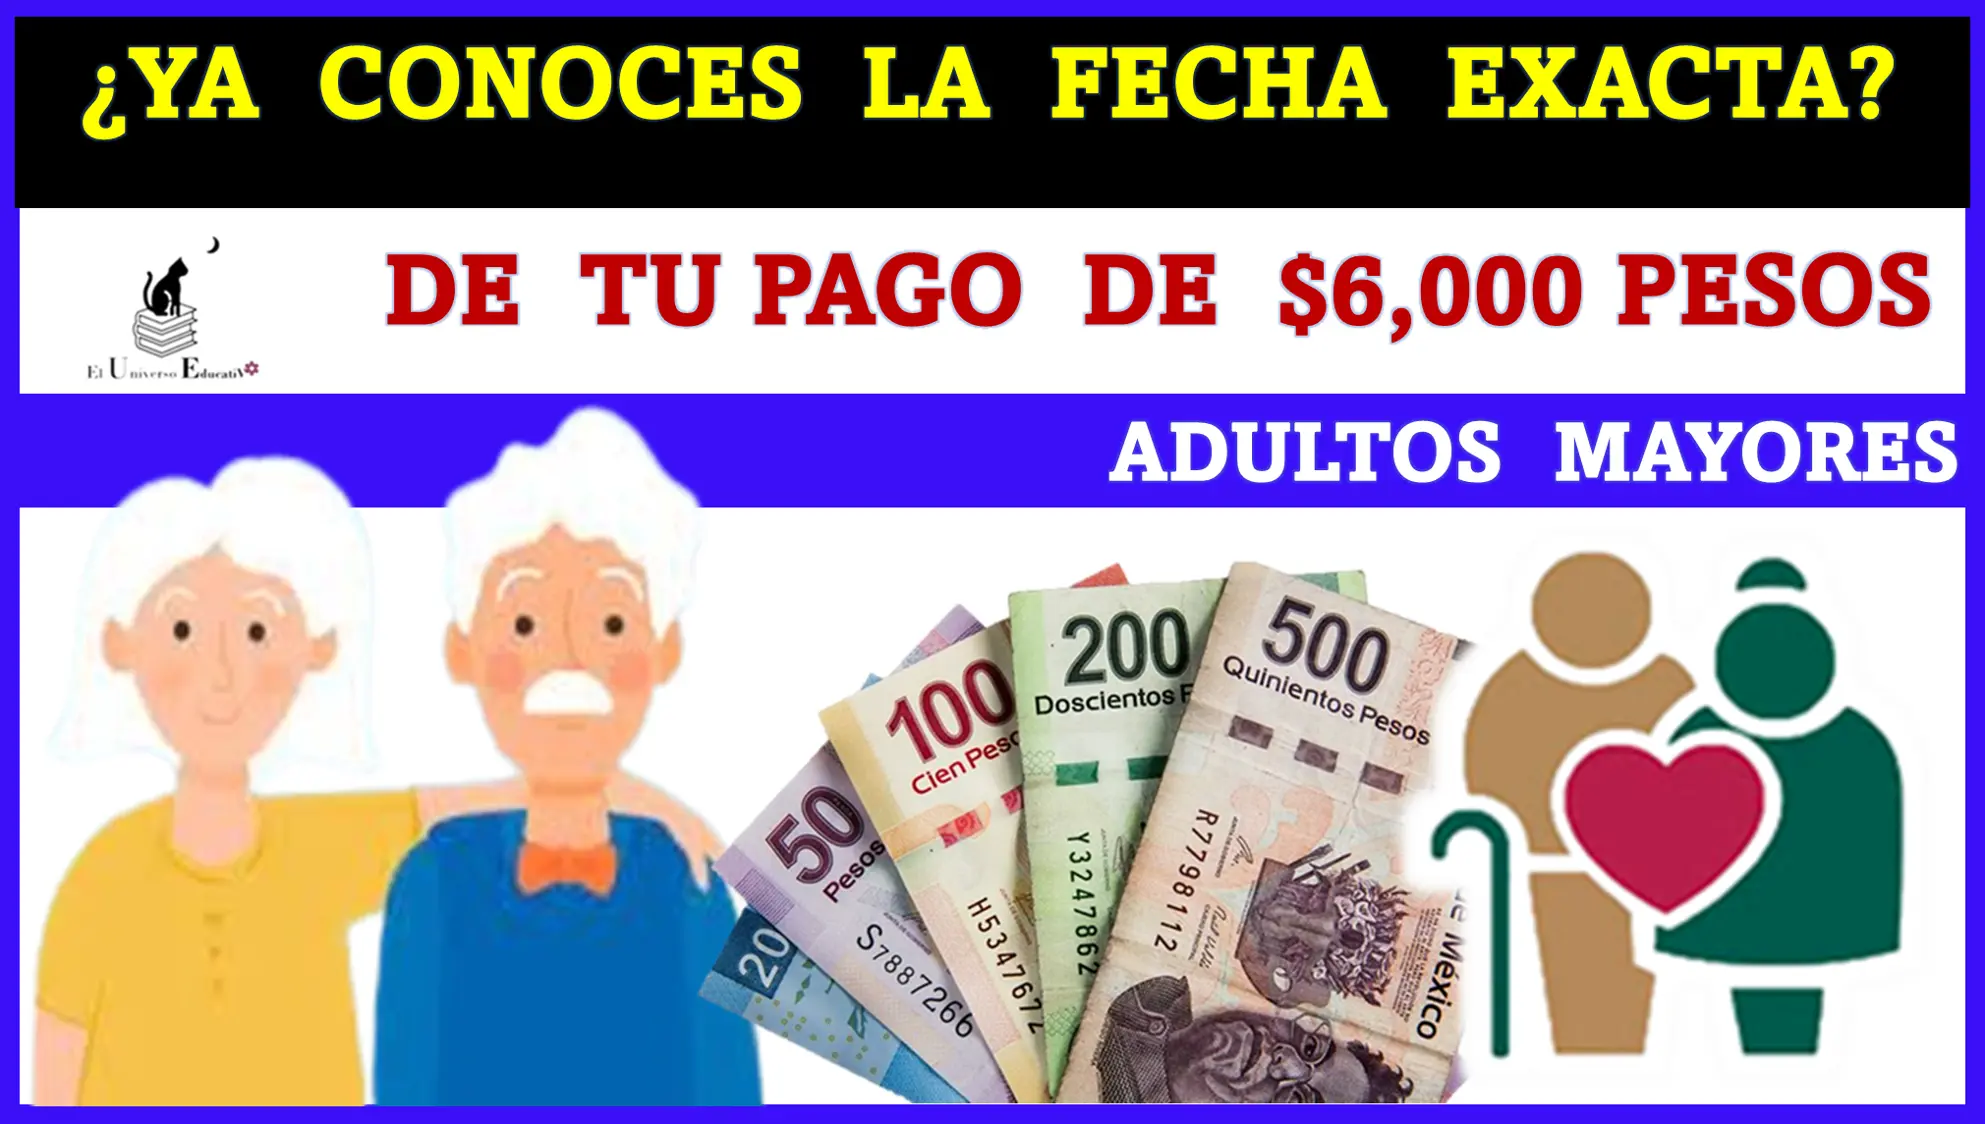 ¿YA CONOCES LA FECHA EXACTA DE TU PAGO DE $6,000 PESOS? | ADULTOS MAYORES